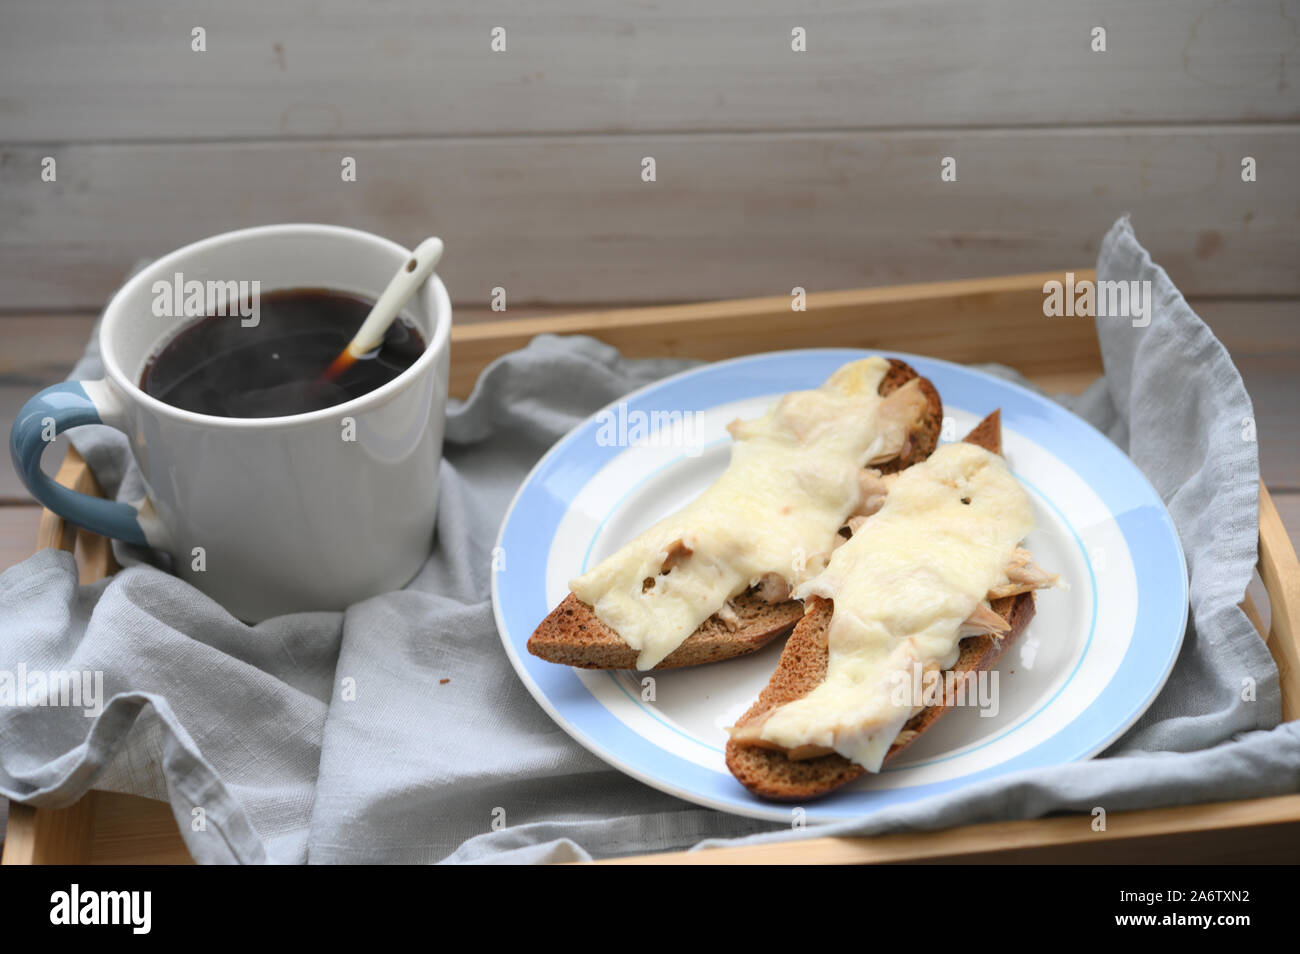 La colazione in stile rustico: due baguette calda panini con carne di pollo e formaggio e una tazza di caffè nero su un vassoio in legno Foto Stock